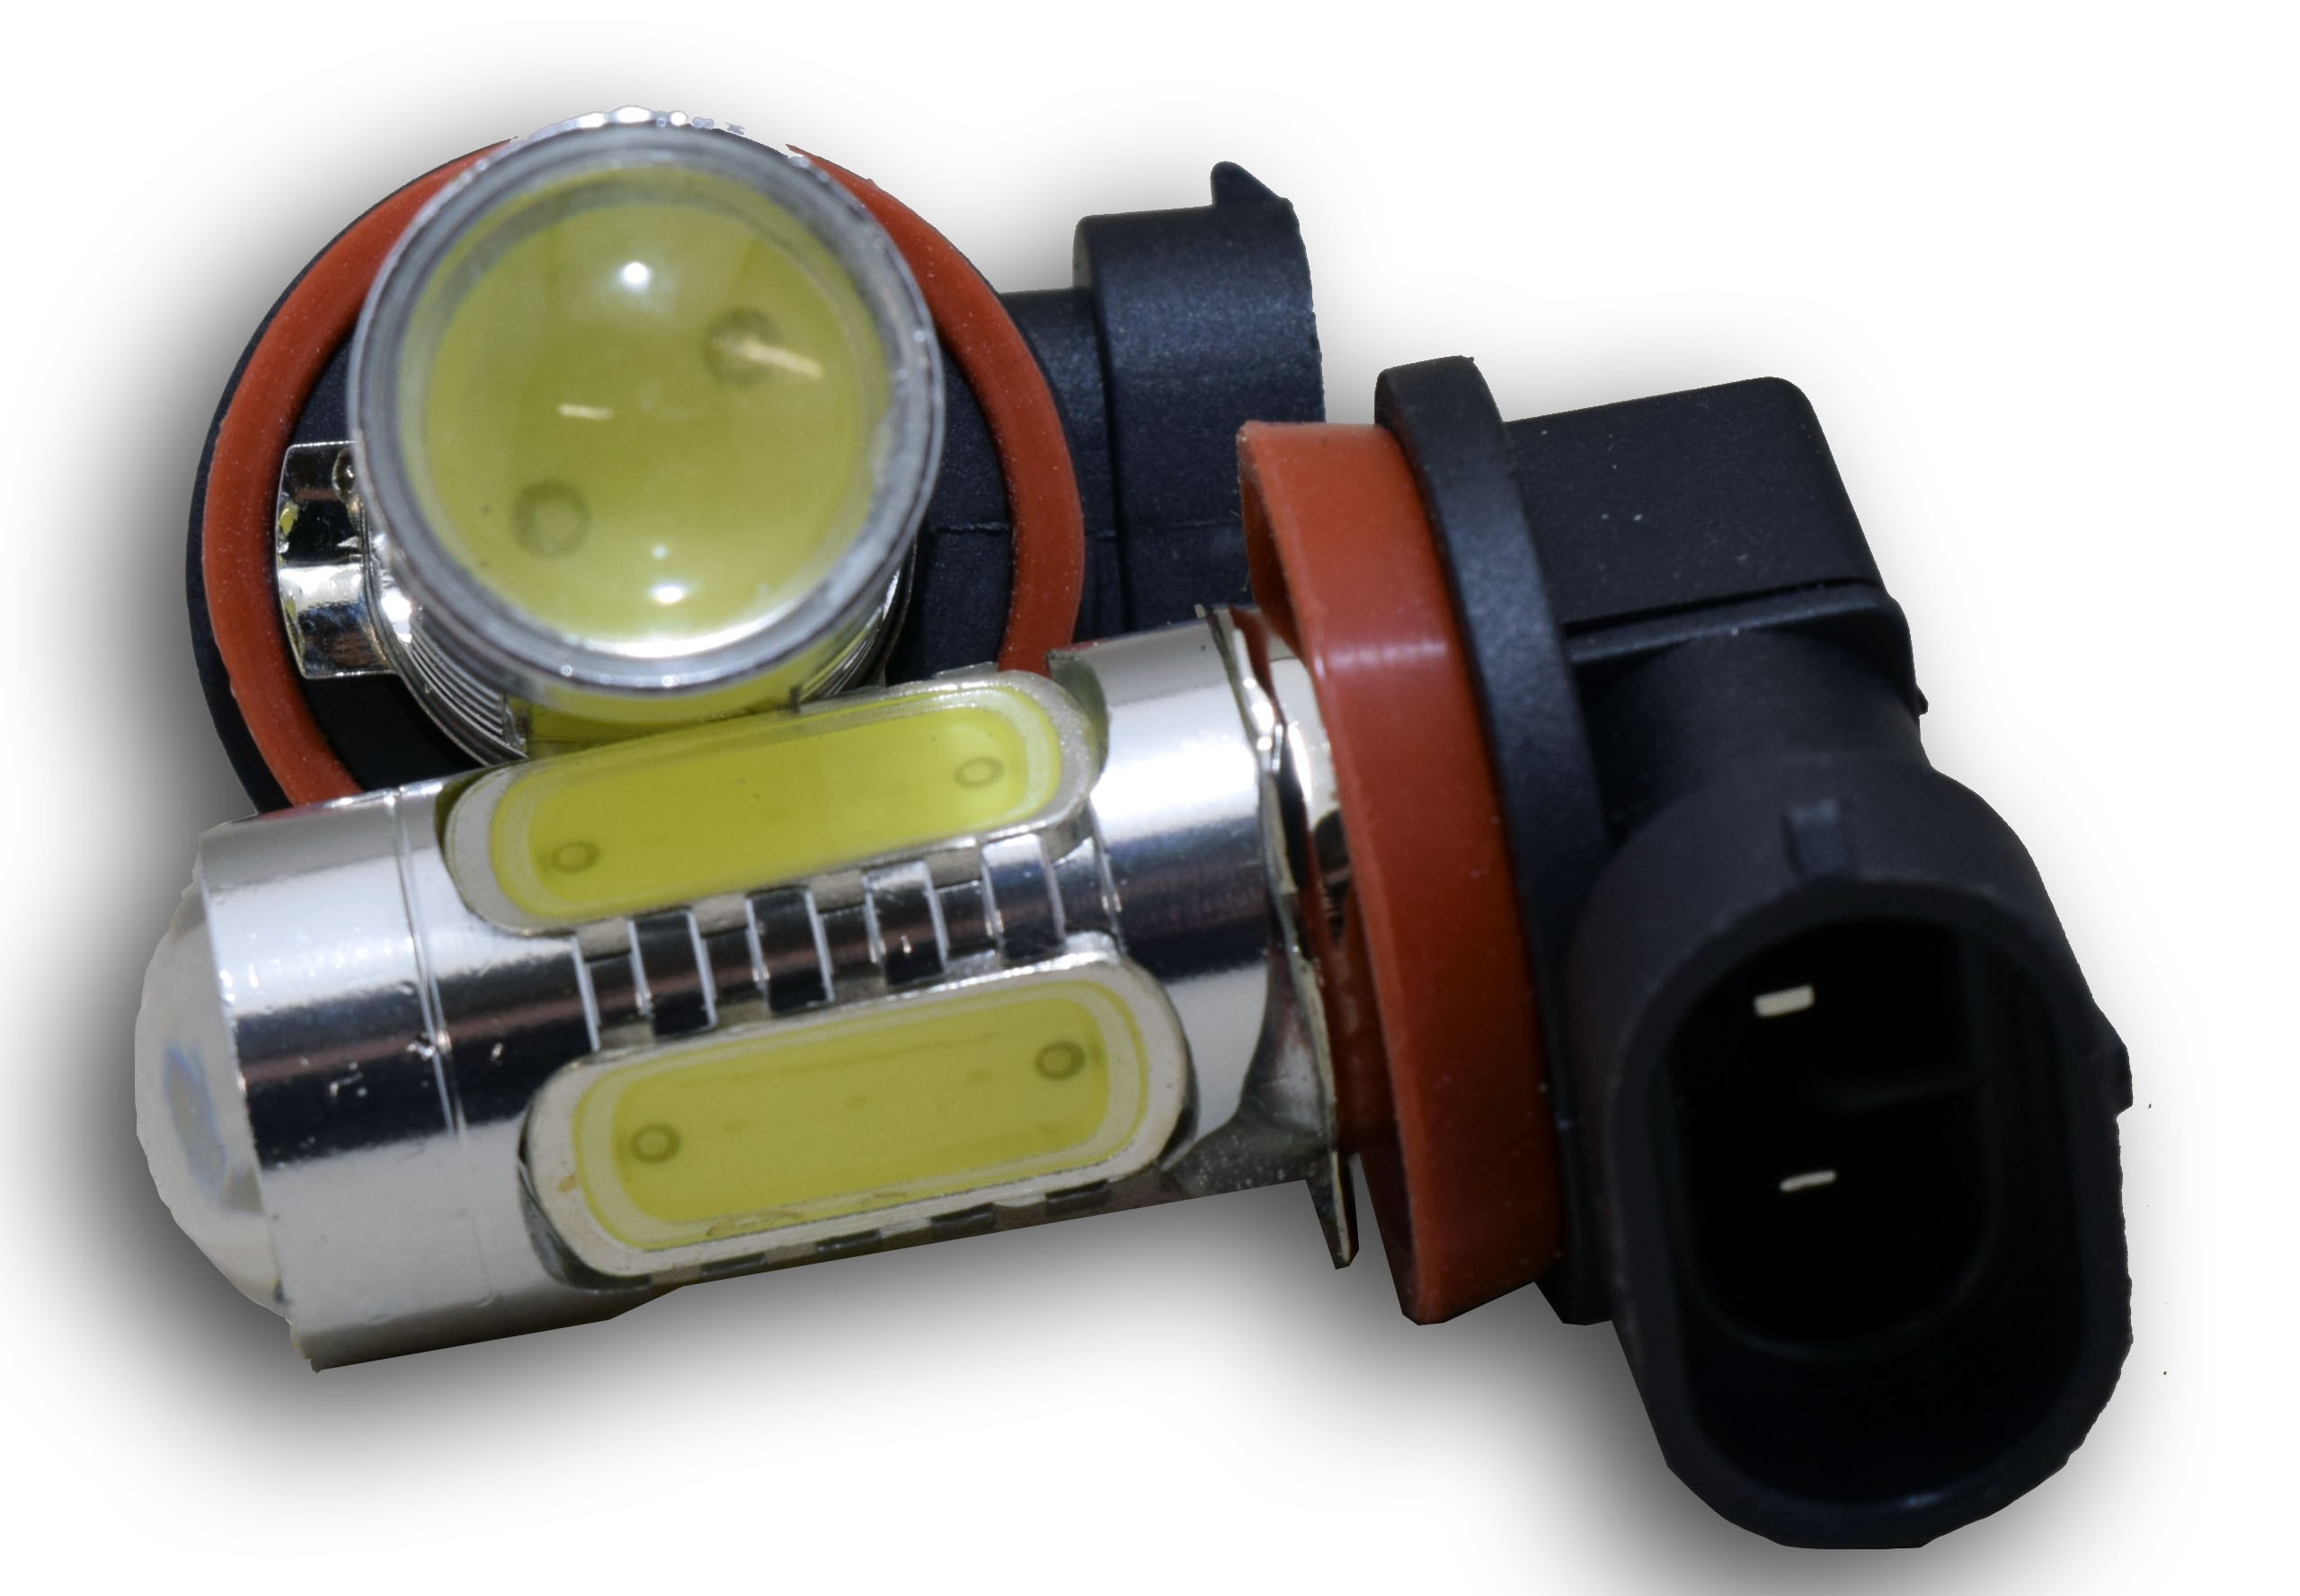 Regulatie elke dag Stam H11 Mistlamp COB LED set kopen? | HID Xenon Verlichting